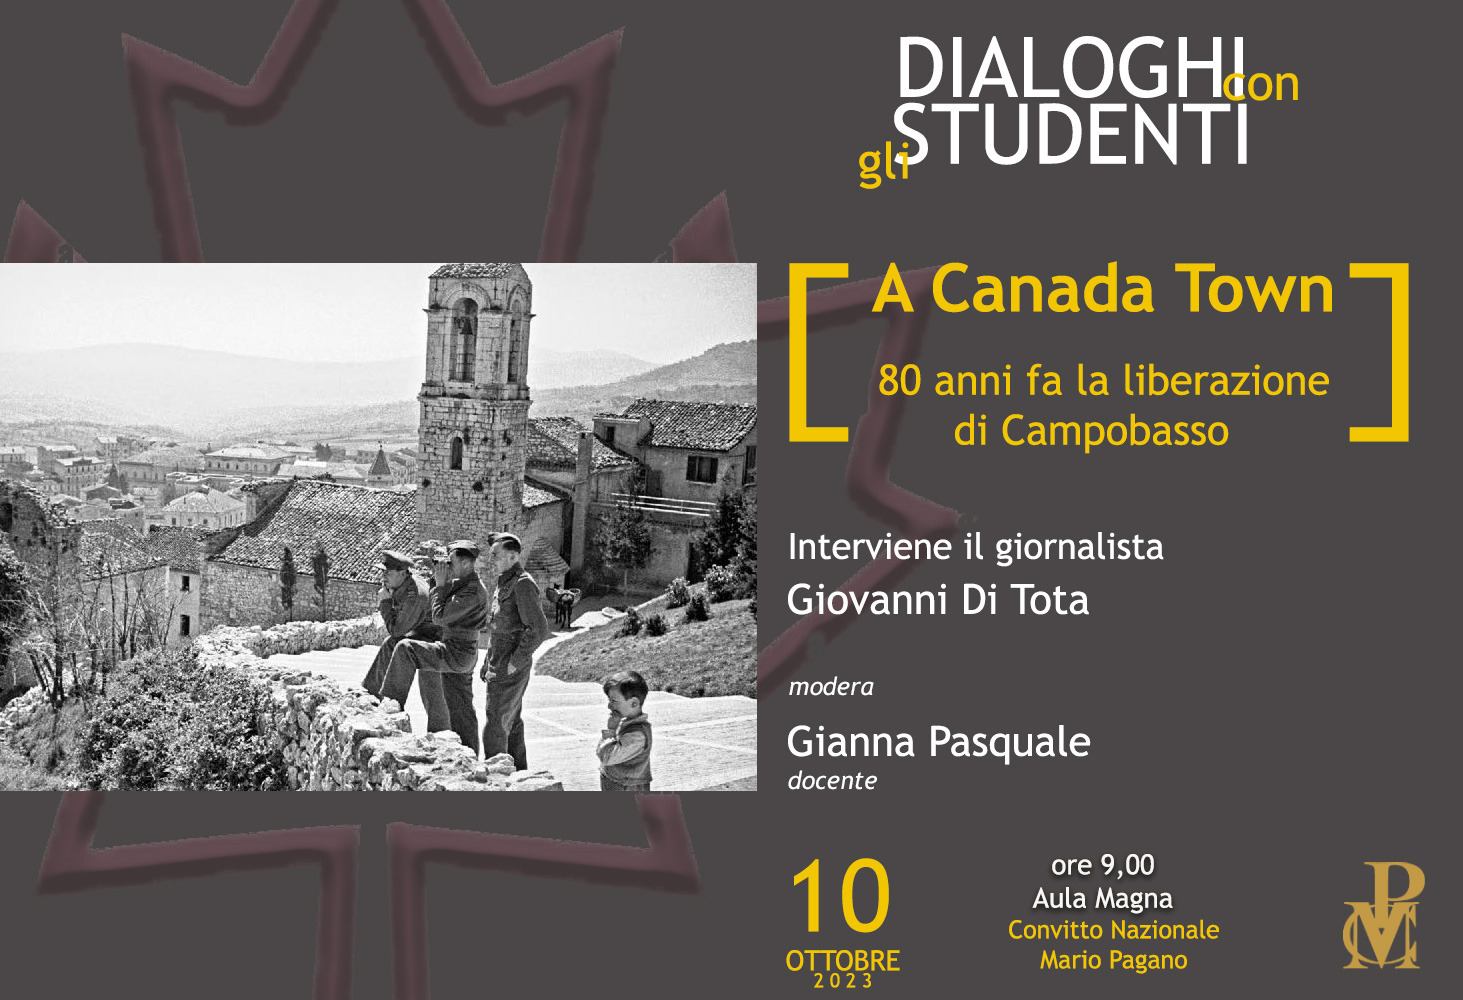 10 ottobre 2023 “Dialoghi con gli Studenti” ospita il giornalista Di Tota – 80 anni fa la liberazione di Campobasso ad opera dei Canadesi.